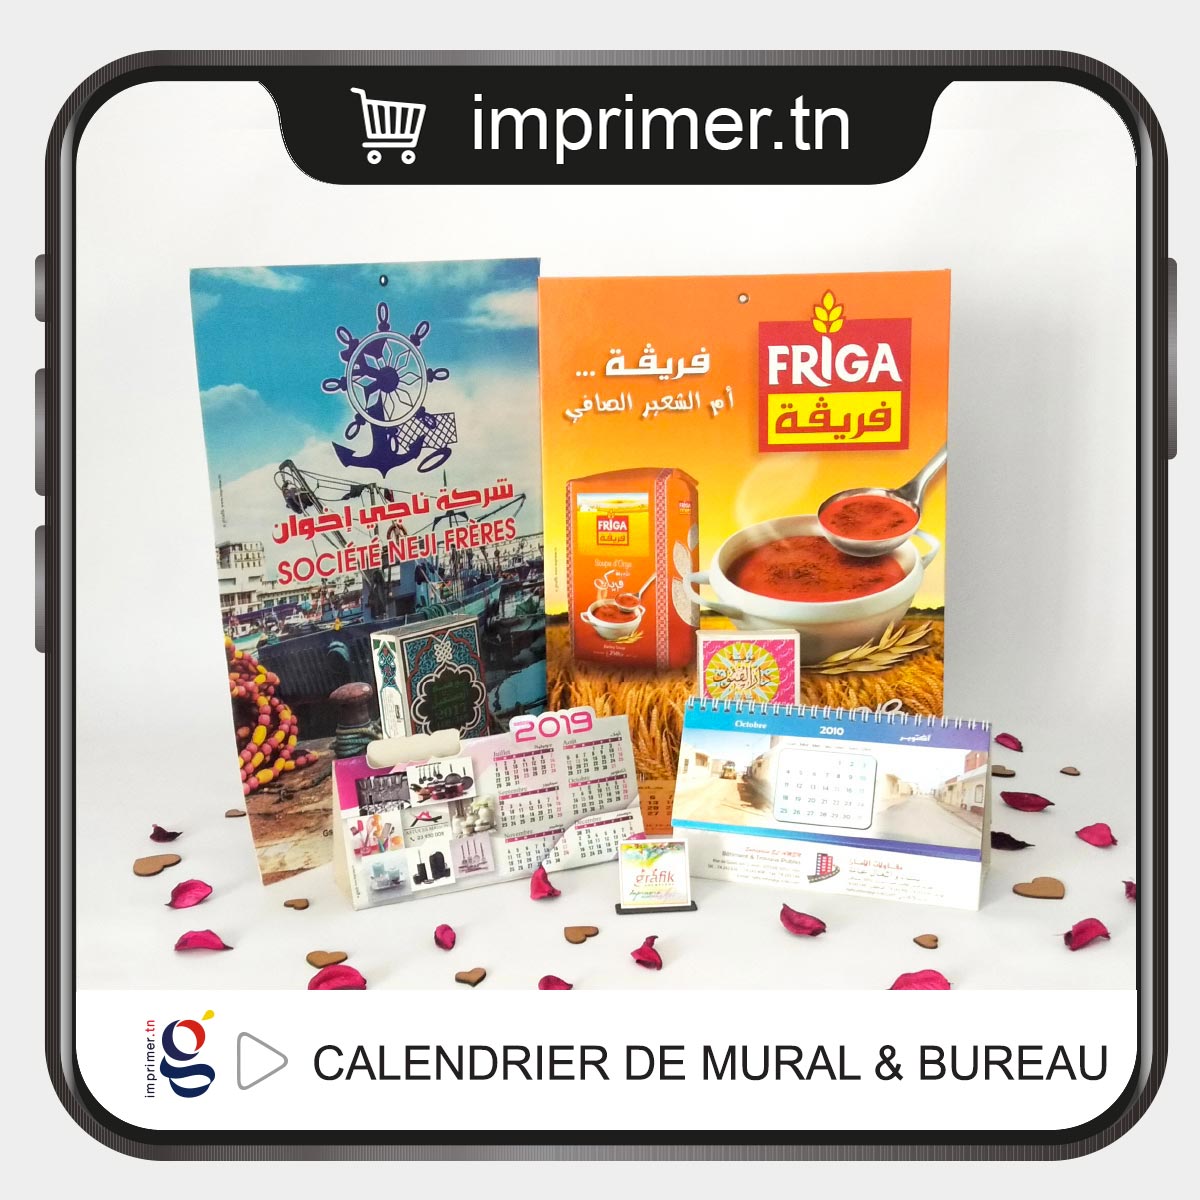 Cadeaux personnalisés  Cadeaux d'entreprise - Imprimerie Tunisie ✓